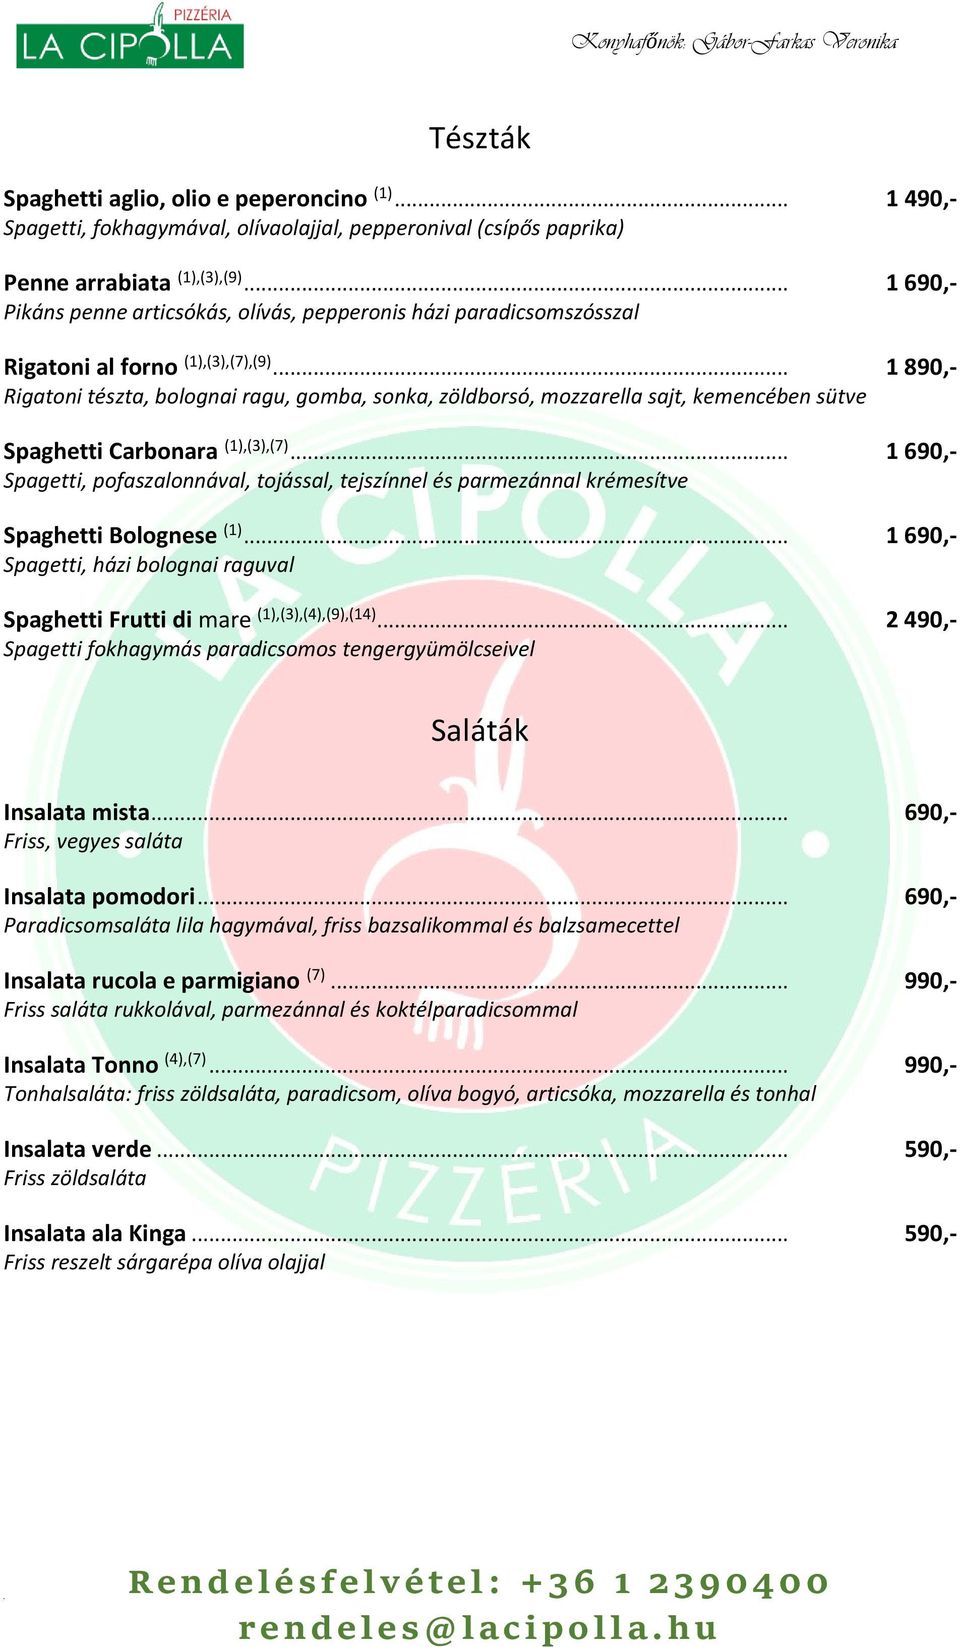 .. 1 890,- Rigatoni tészta, bolognai ragu, gomba, sonka, zöldborsó, mozzarella sajt, kemencében sütve Spaghetti Carbonara (1),(3),(7).